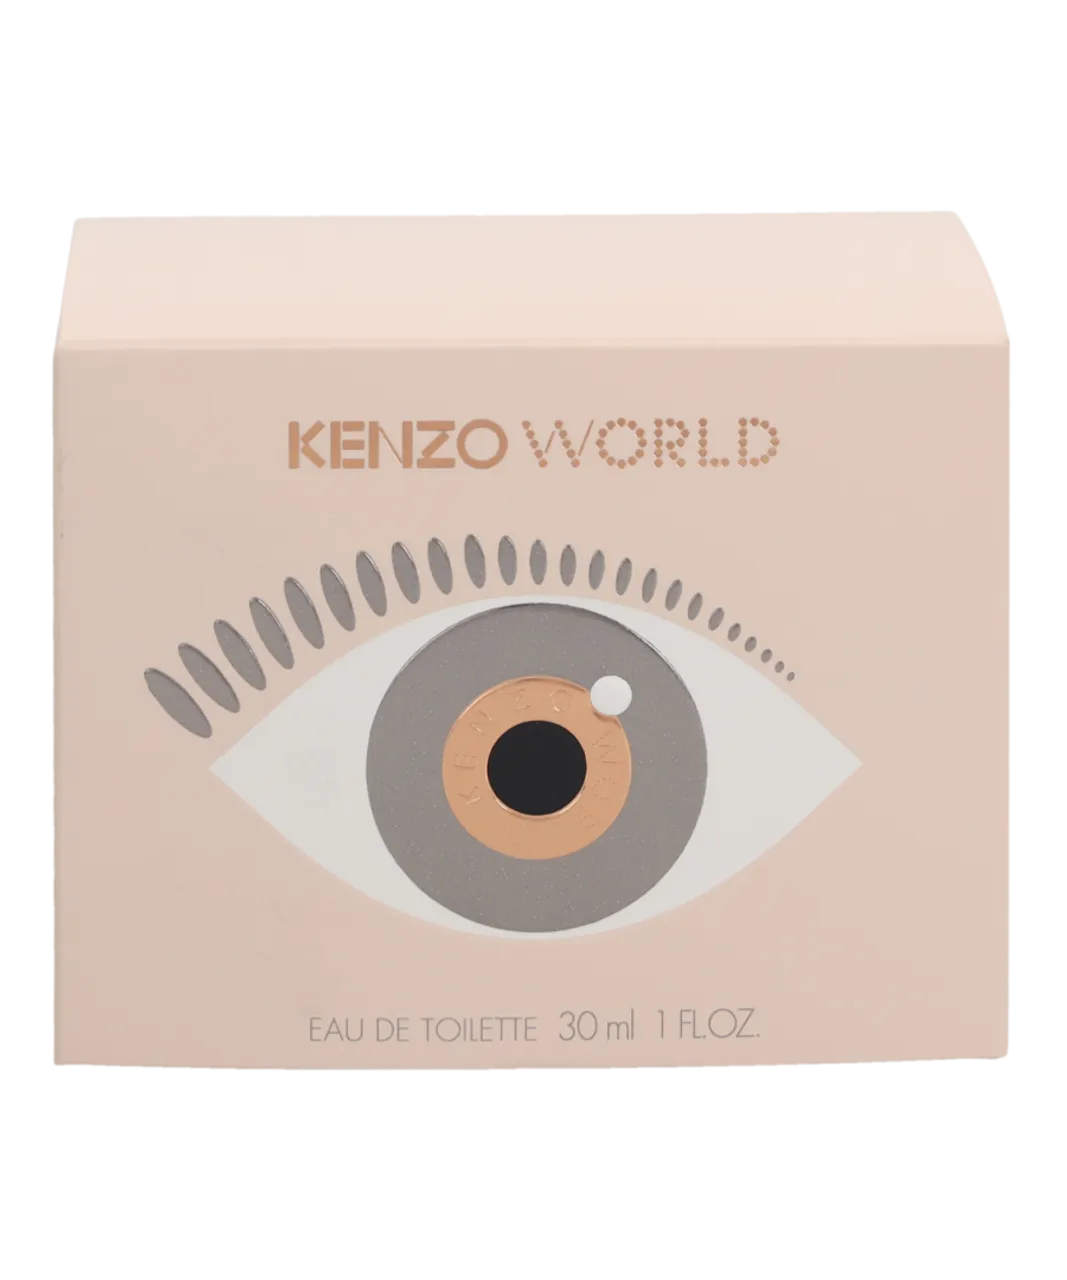 Kenzo Womens World Eau De Toilette 30ml - One Size